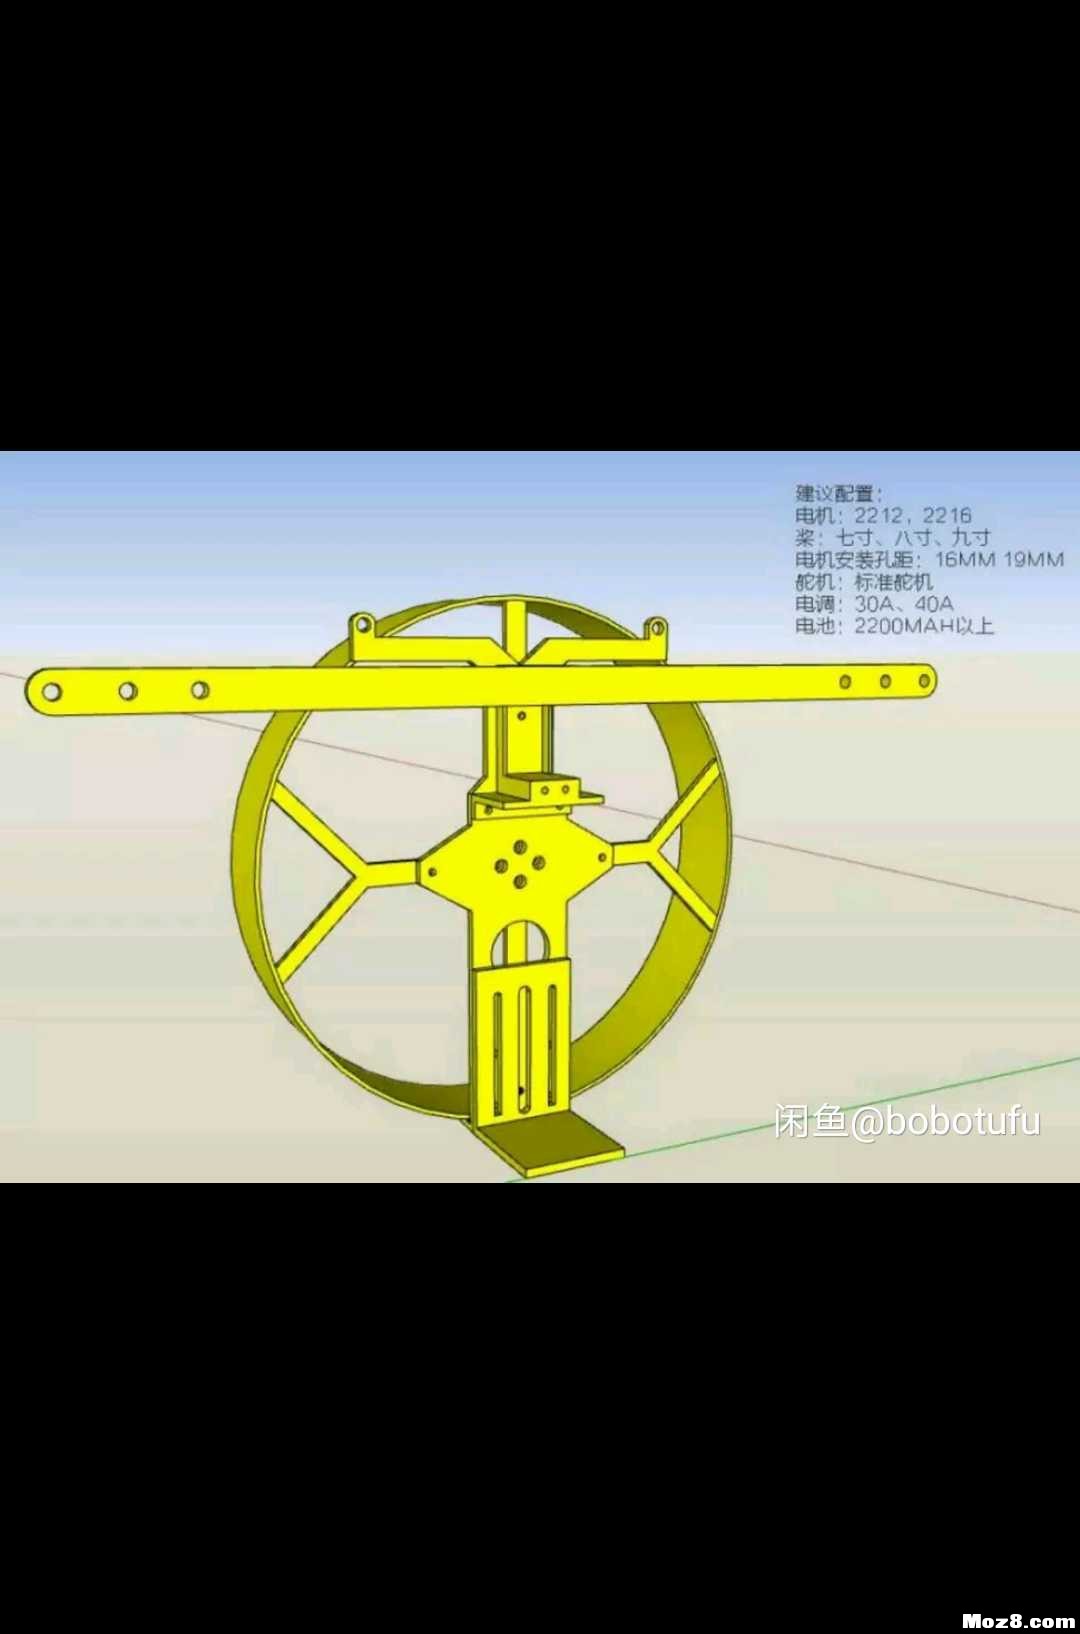 遥控动力伞 3D机架重画 模型,固定翼,舵机,电调,电机 作者:bobotufu 6495 